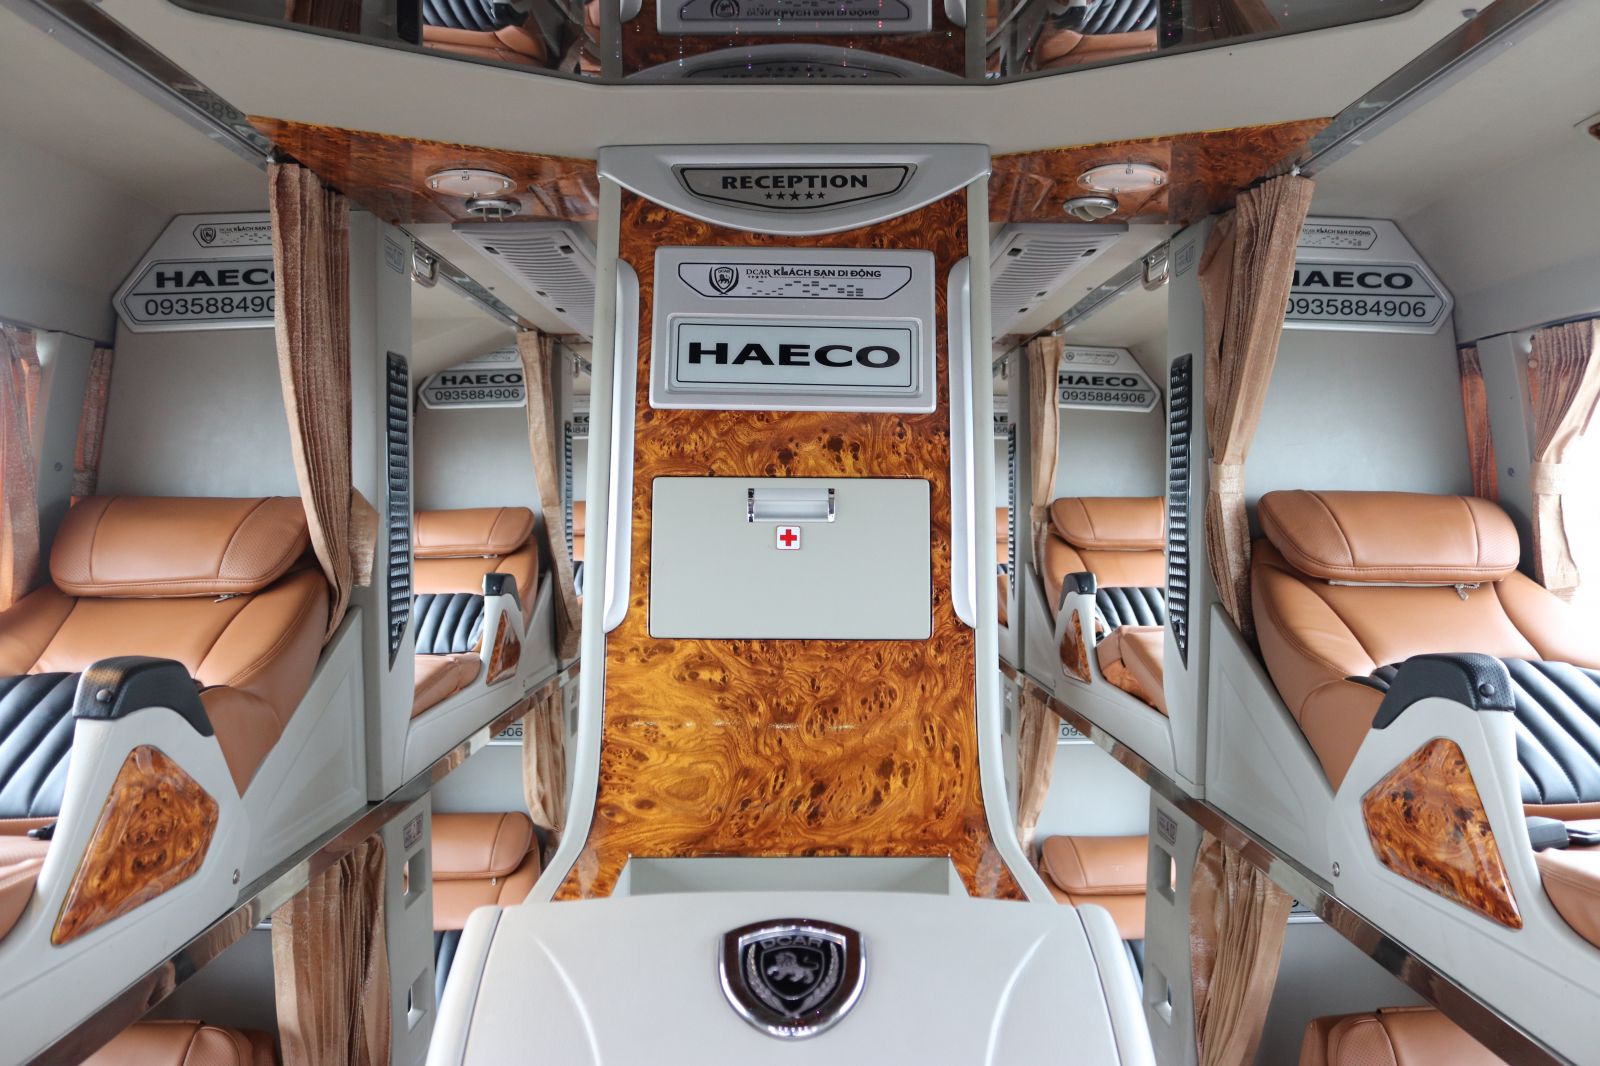 Nội thất xe HAECO Limousine thứ 150 được làm lại vô cùng tiện nghi, sang trọng và đẳng cấp